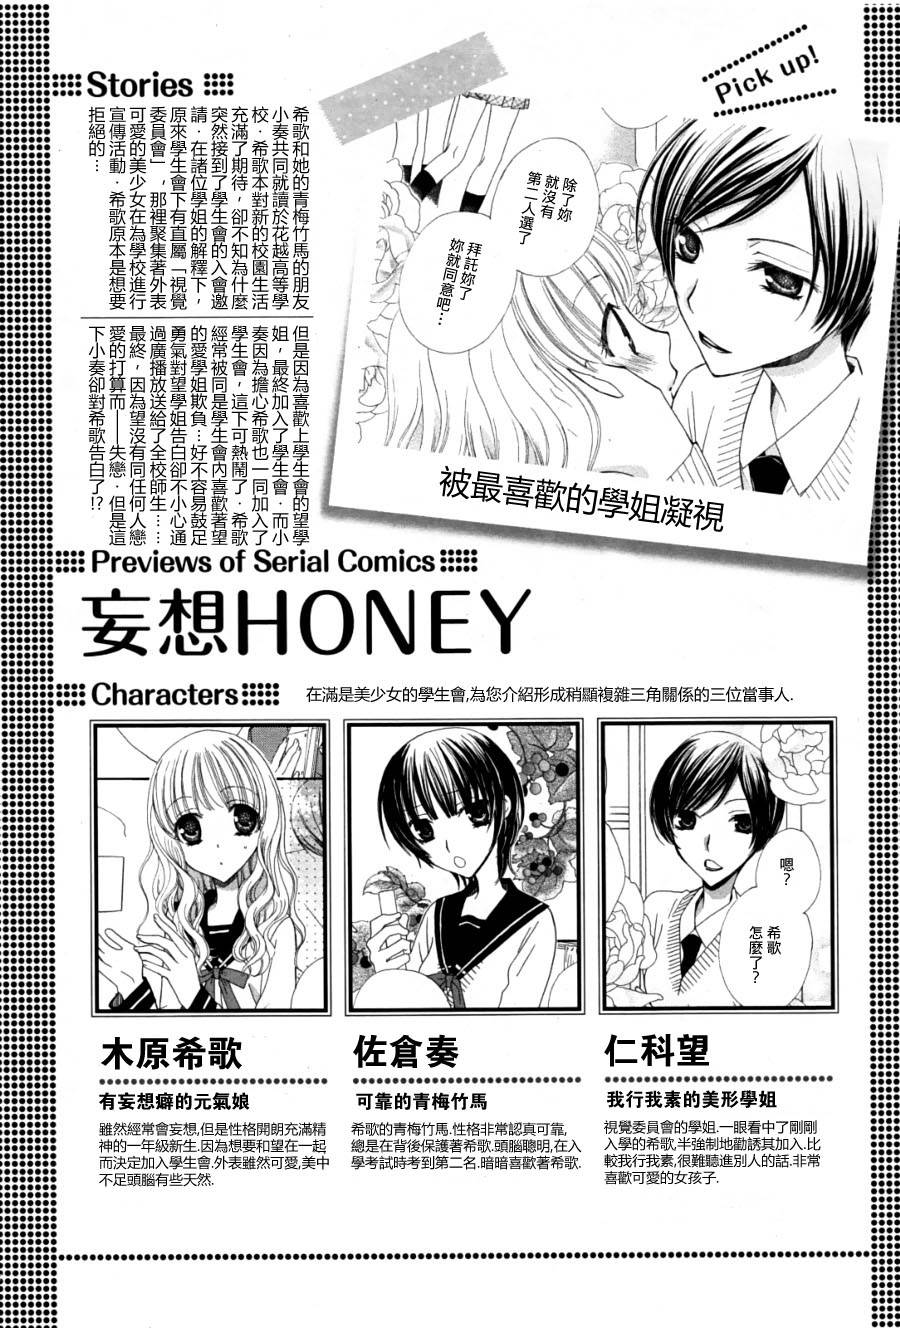 妄想honey最终话 妄想honey漫画 动漫之家漫画网